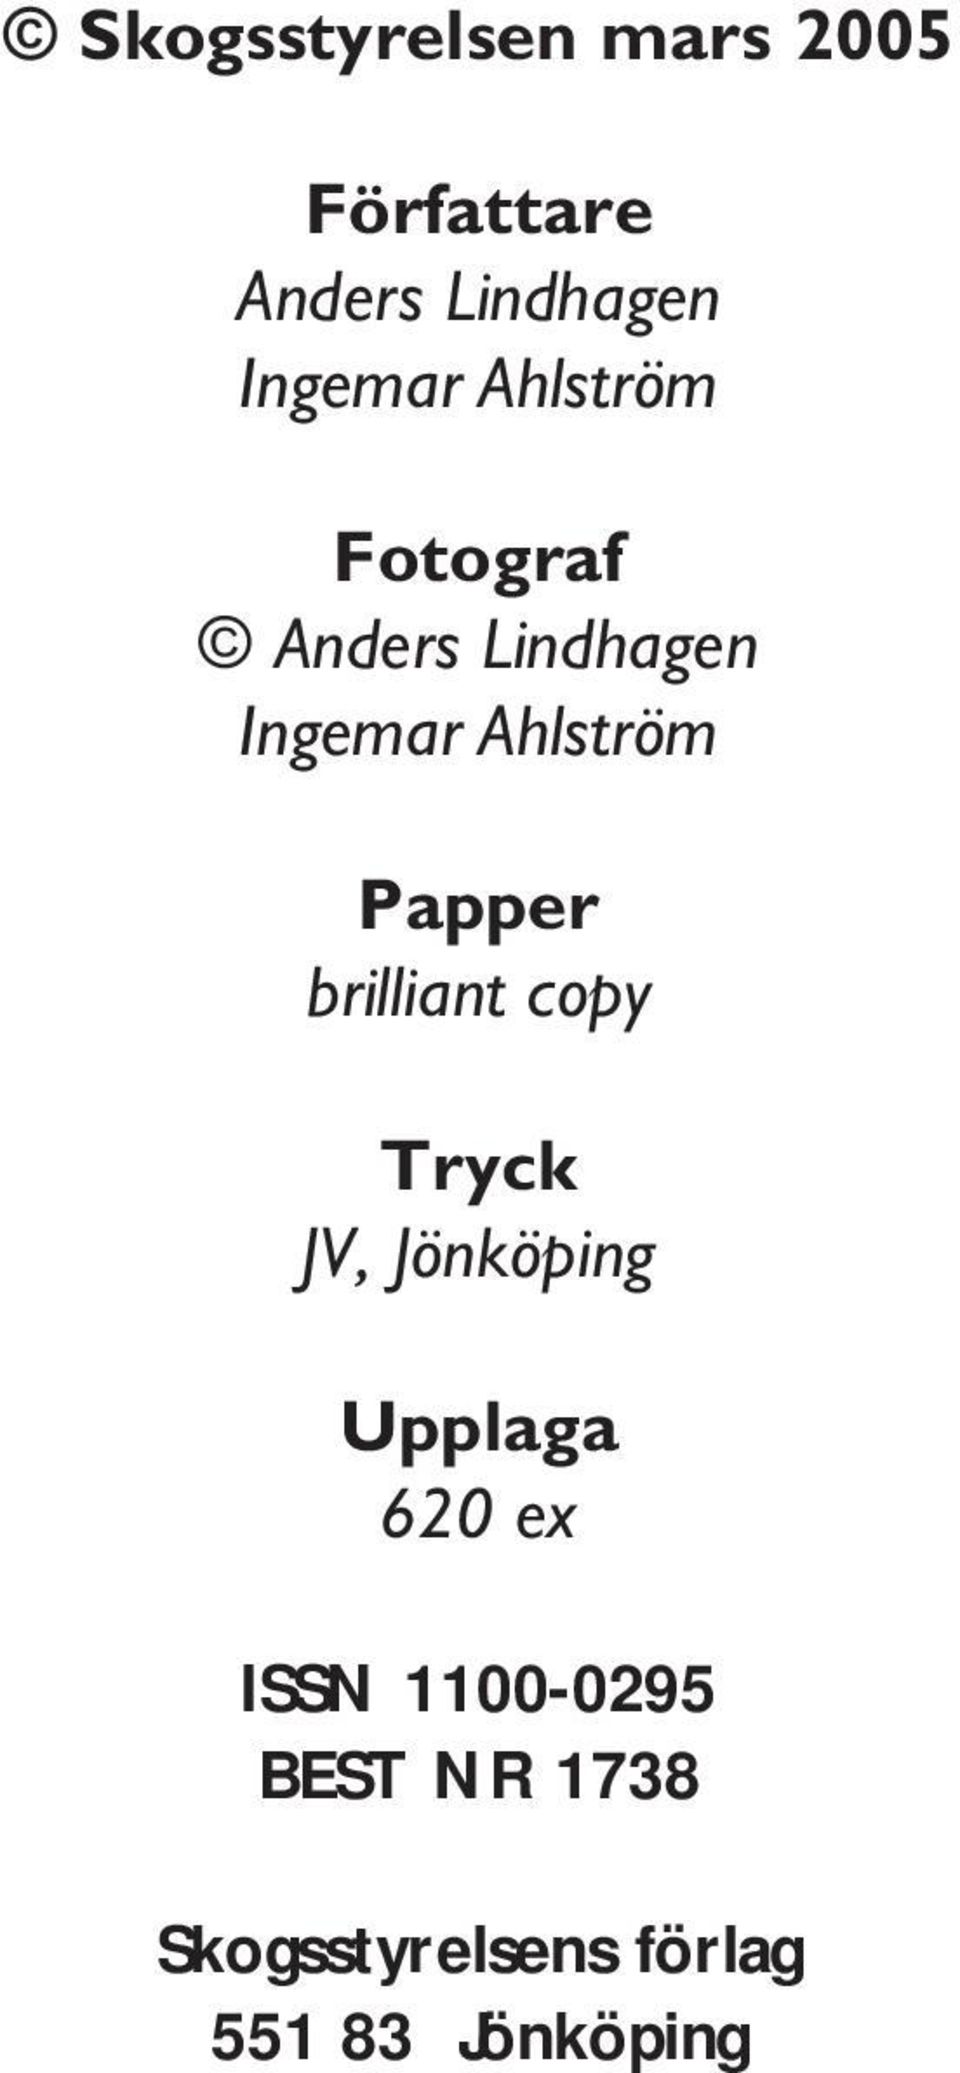 Papper brilliant copy Tryck JV, Jönköping Upplaga 620 ex